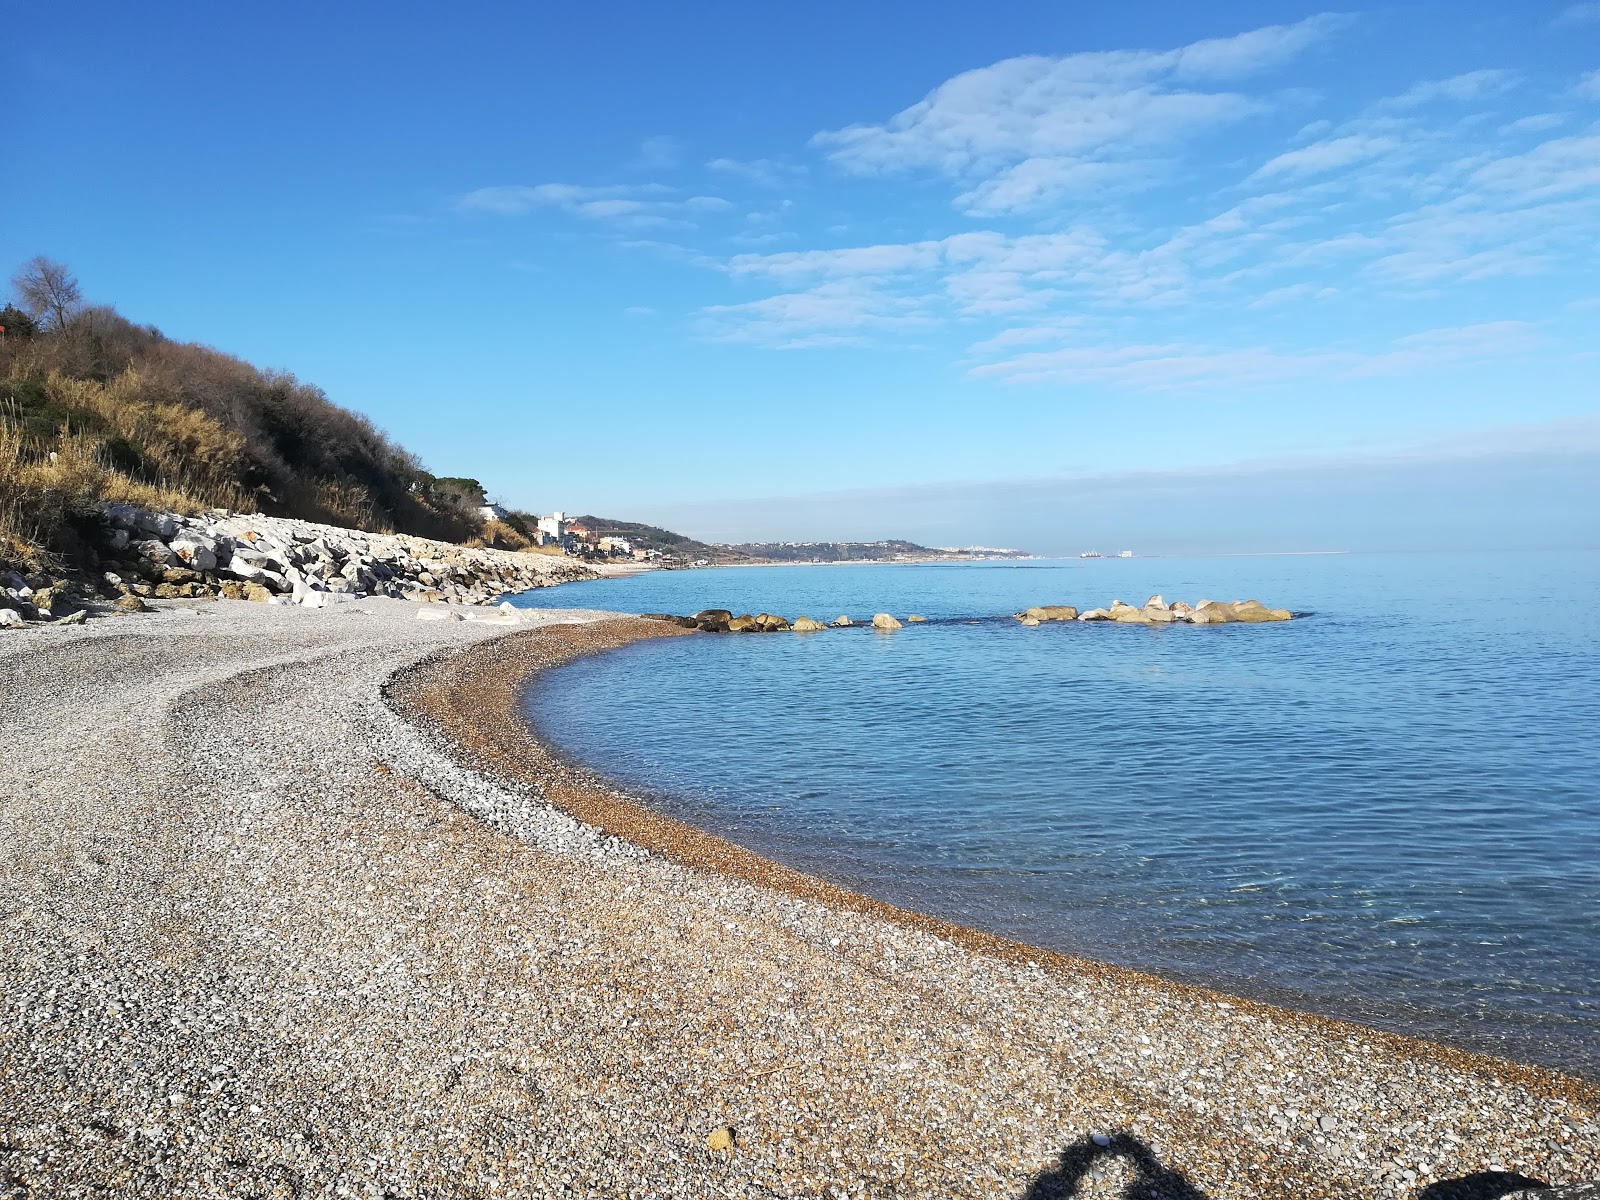 Foto von Spiaggia di Calata Turchino mit viele kleine buchten